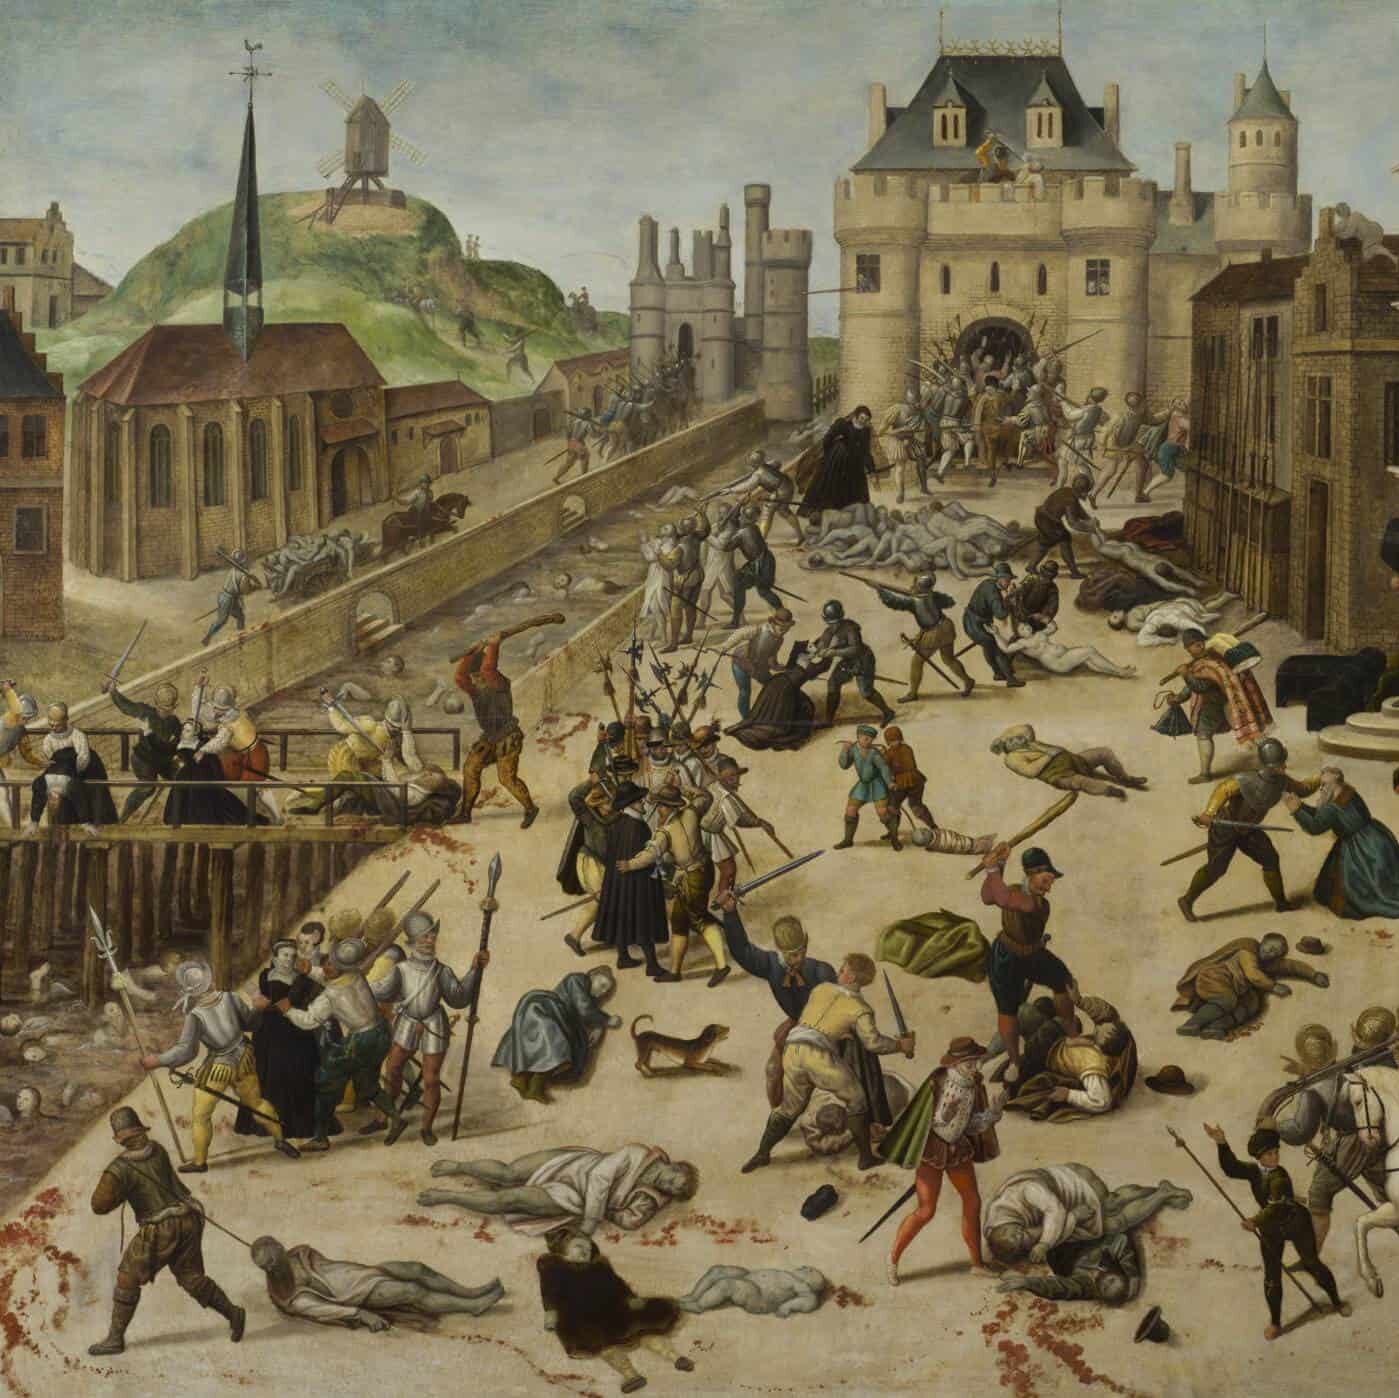 François Dubois, Le Massacre de la Saint-Barthélemy (entre 1572-1584)